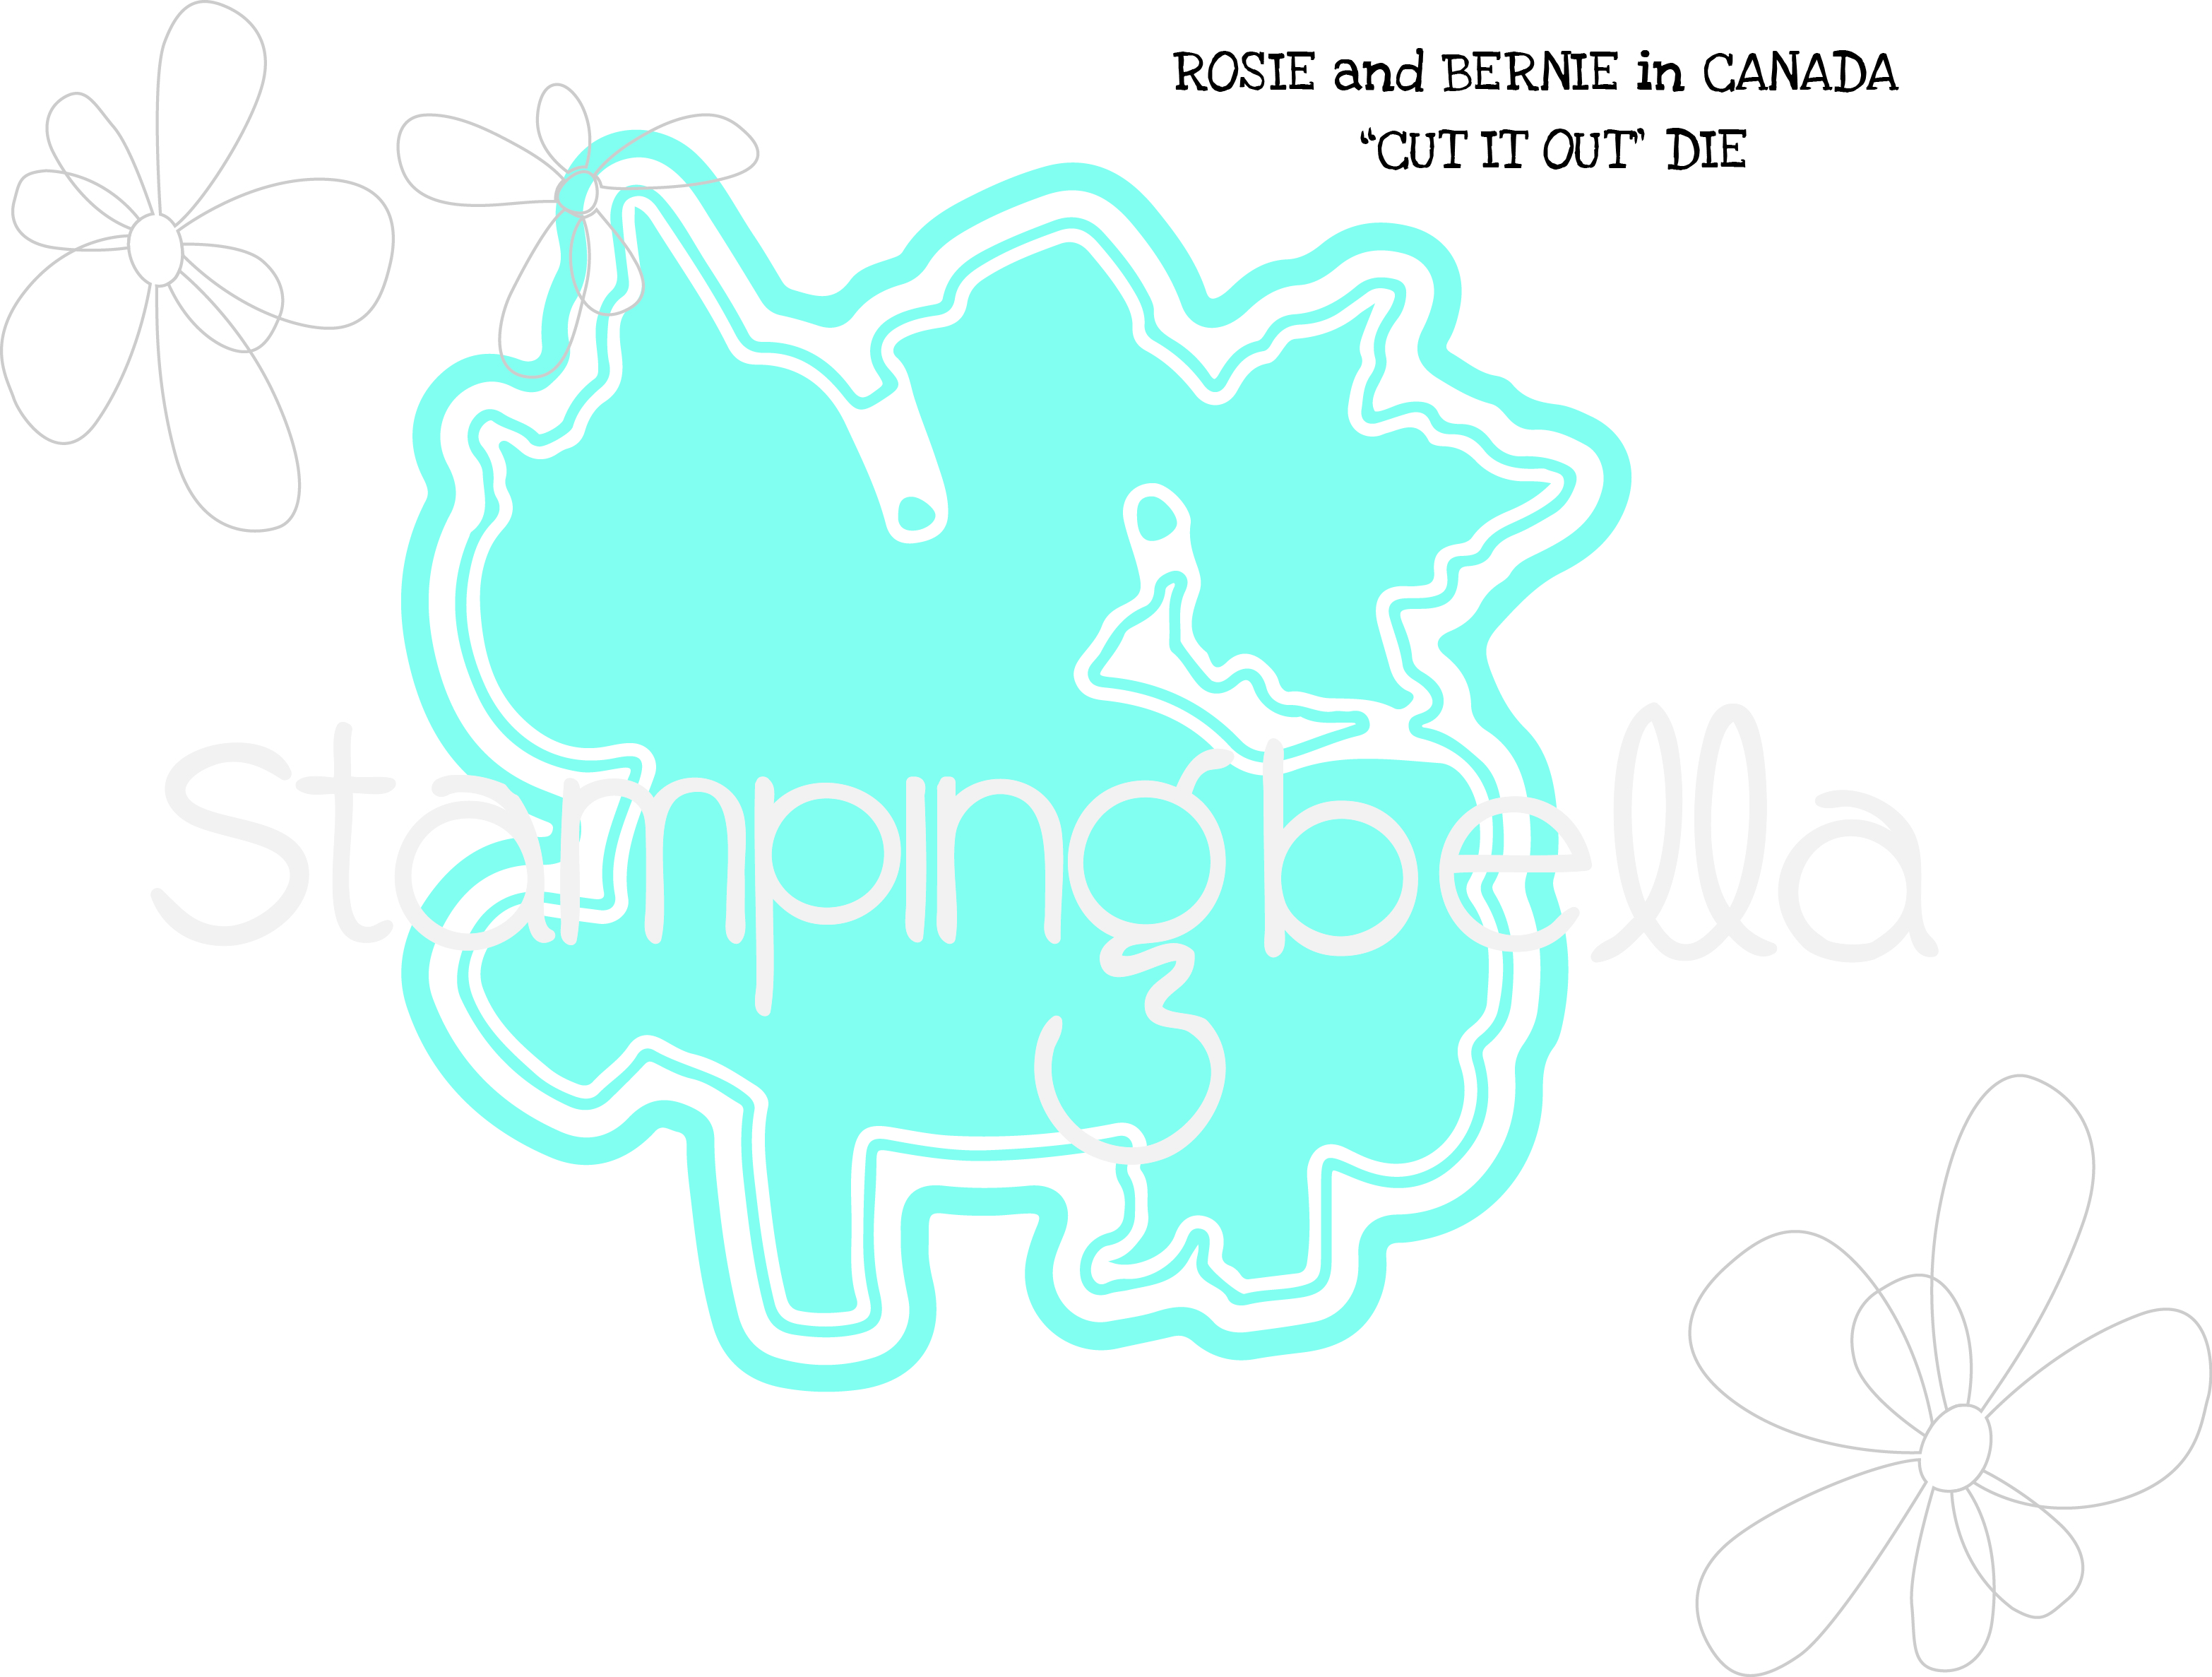 www.stampingbella.com: Rubber stamp: Rosie and Bernie in Canada CUT IT OUT DIE